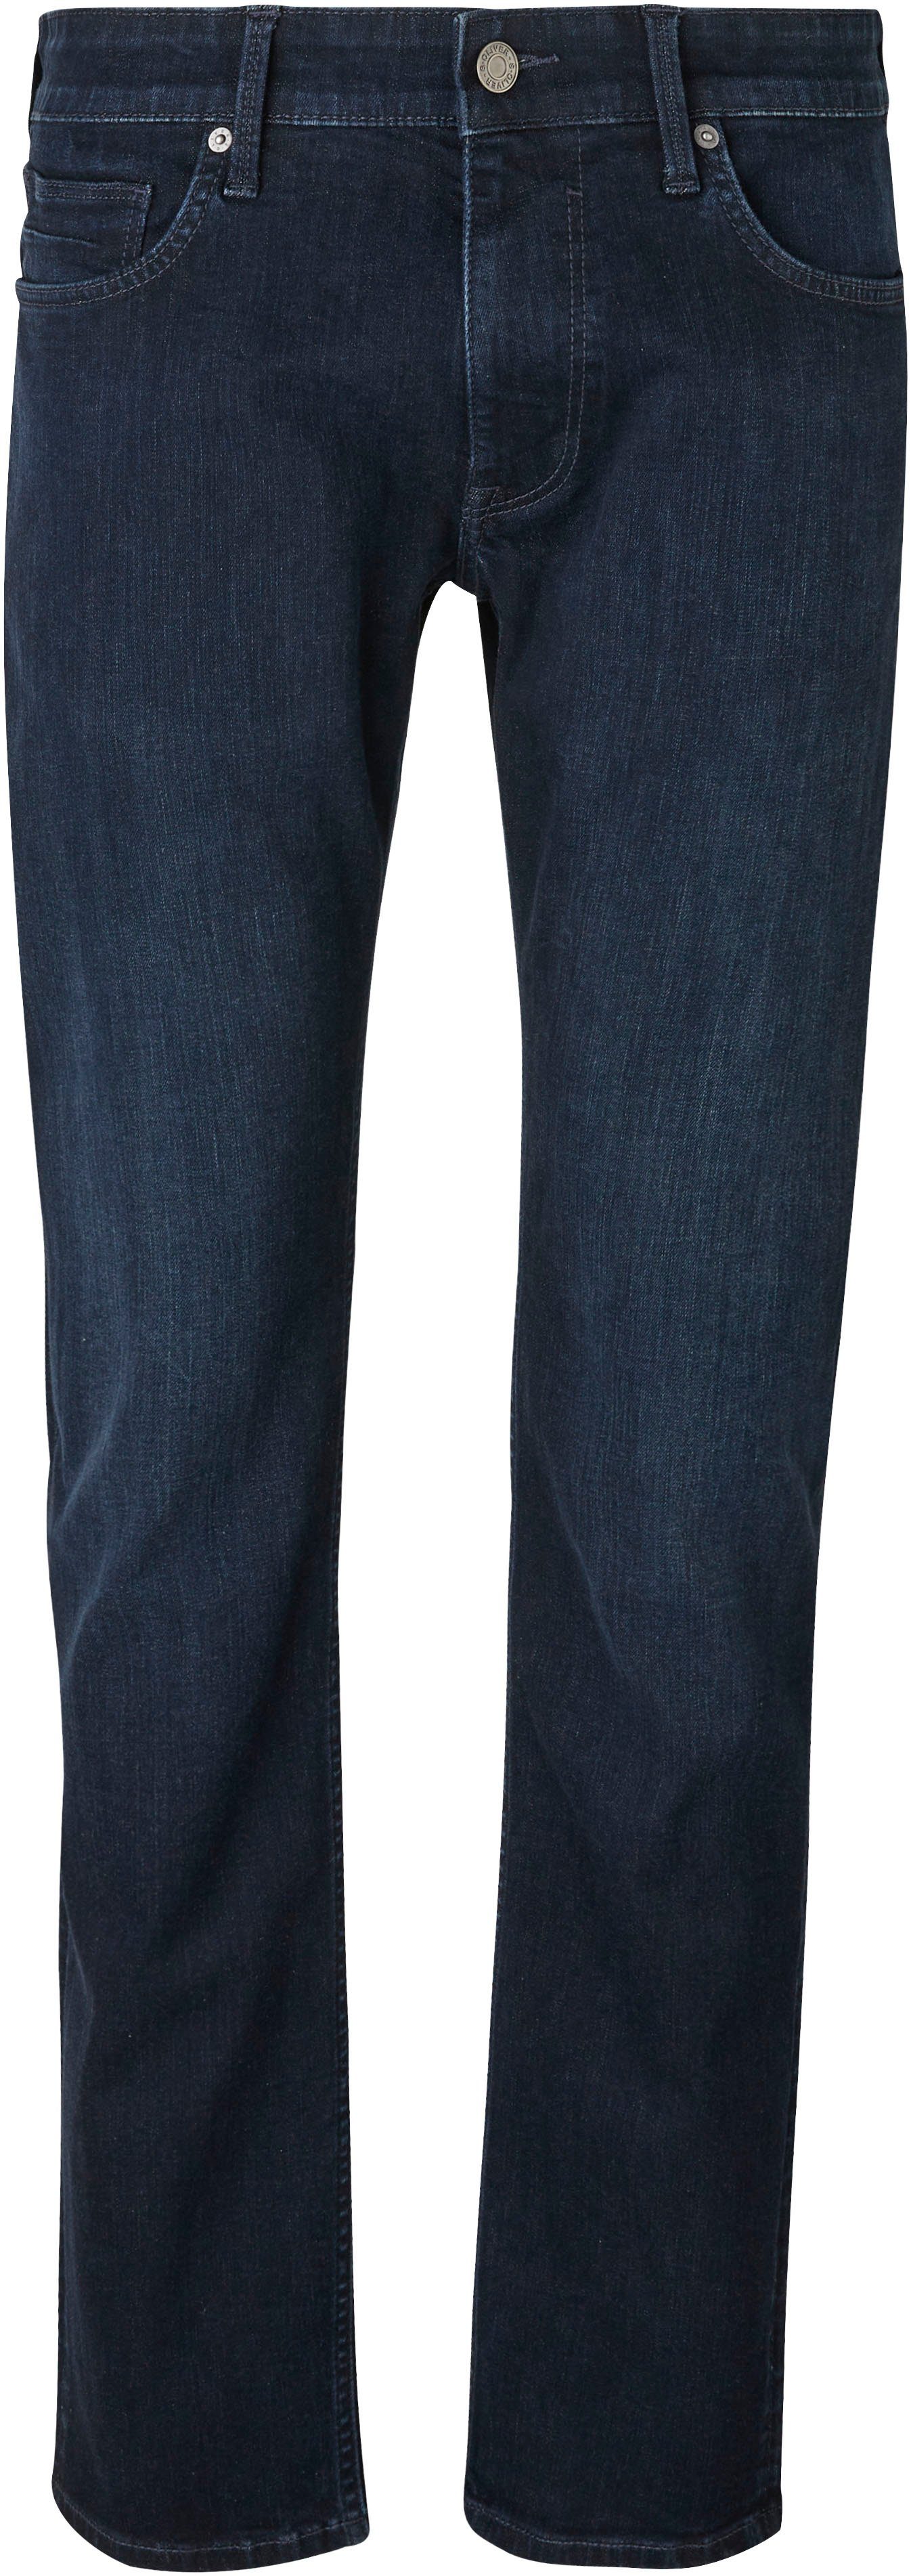 s.Oliver Bequeme Jeans mit Gesäß- und Eingrifftaschen dark blue 34